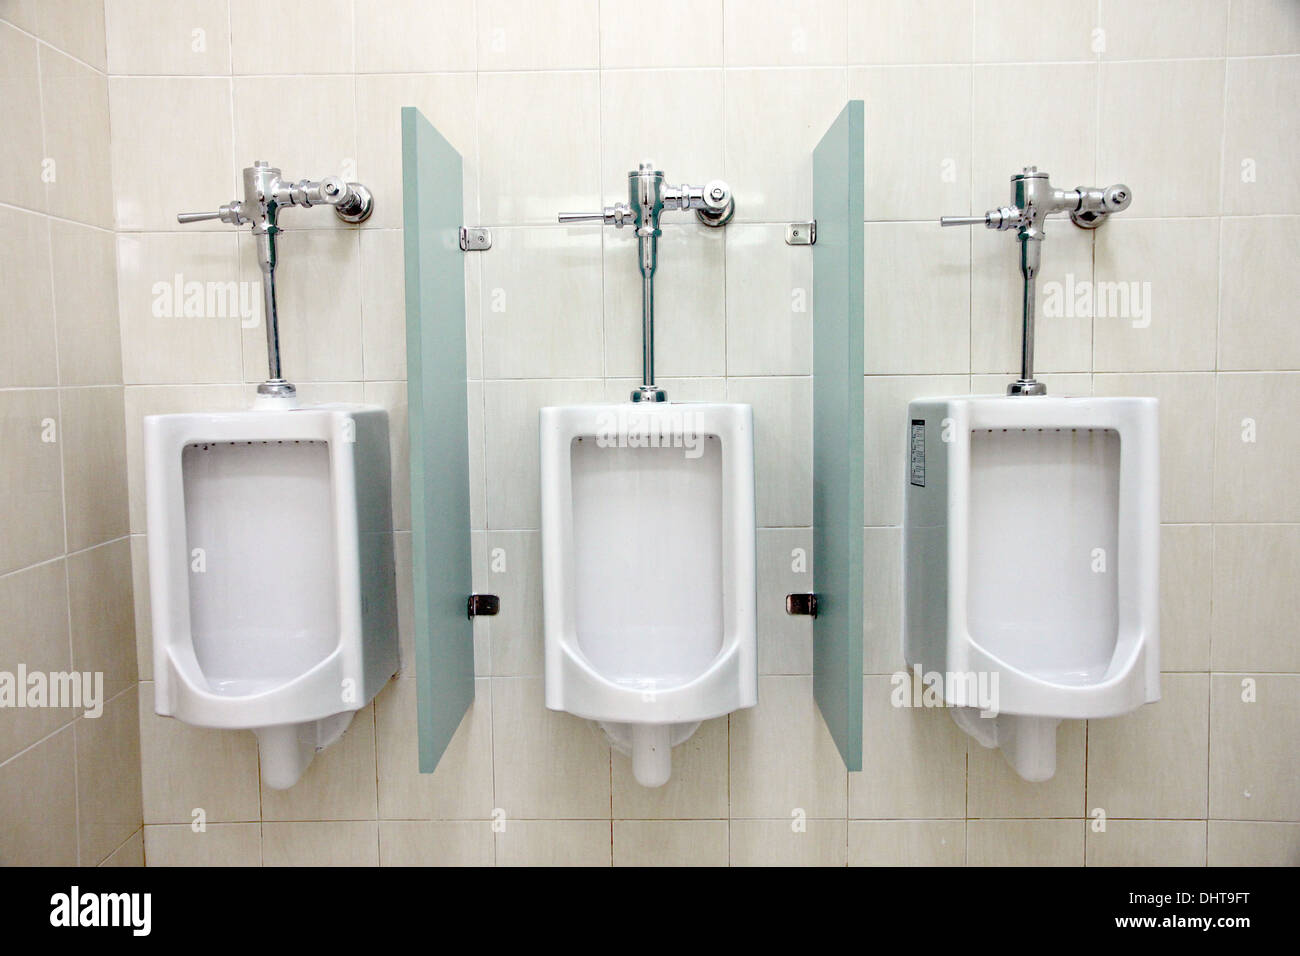 La imagen se centran los urinarios en los baños de hombres. Foto de stock